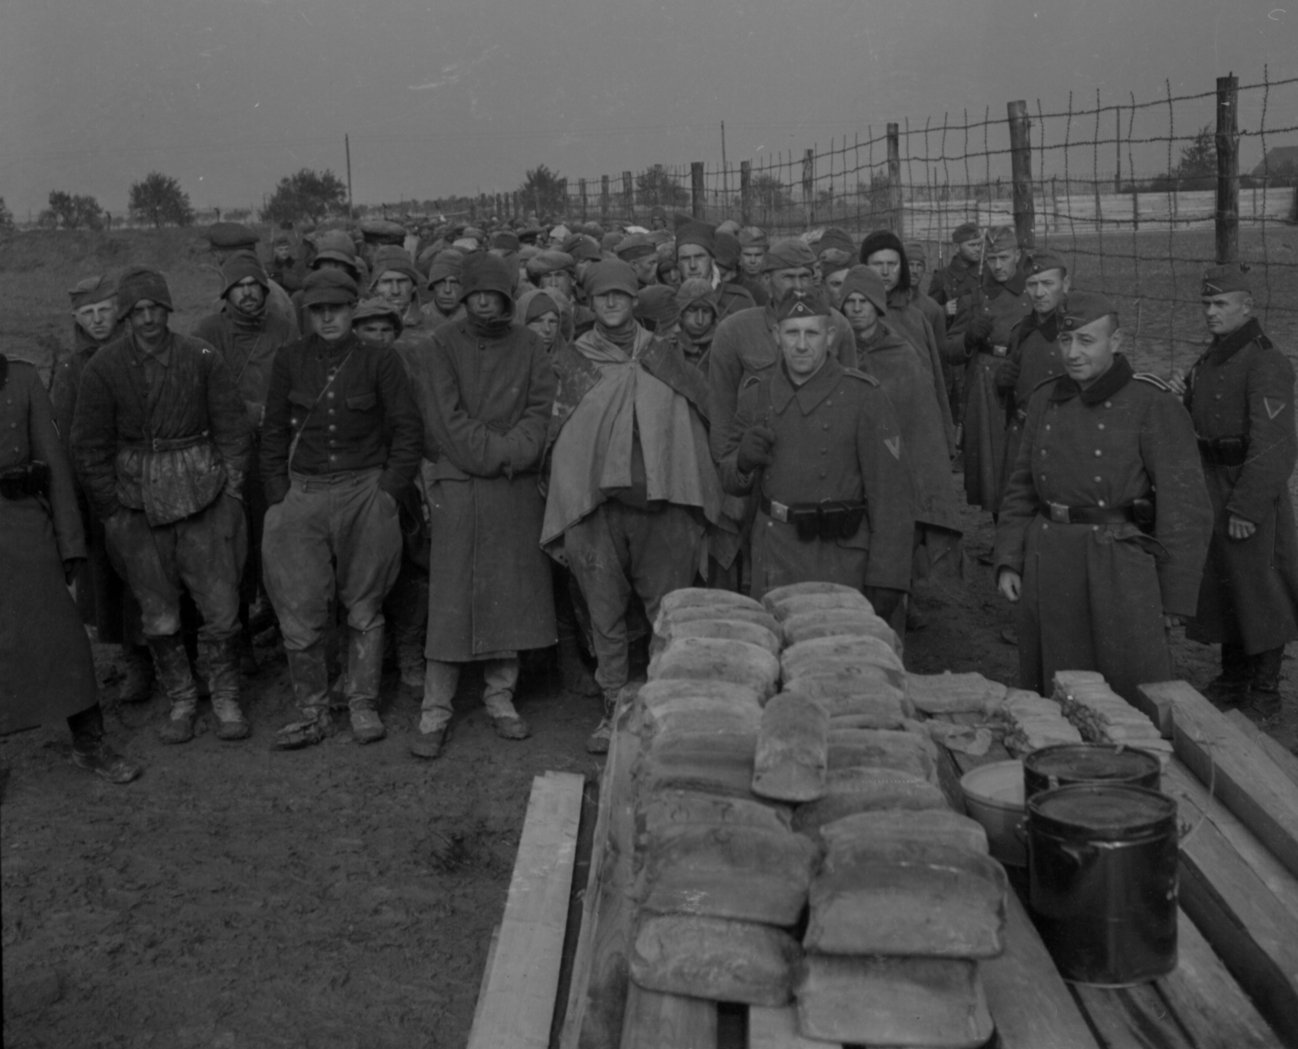 Sowjetische Gefangene warten in Kolonne aufgereiht auf die Verteilung der Verpflegung, 1941/42, Bildarchivnummer 2234, Archiv der Gedenkstätte Ehrenhain Zeithain